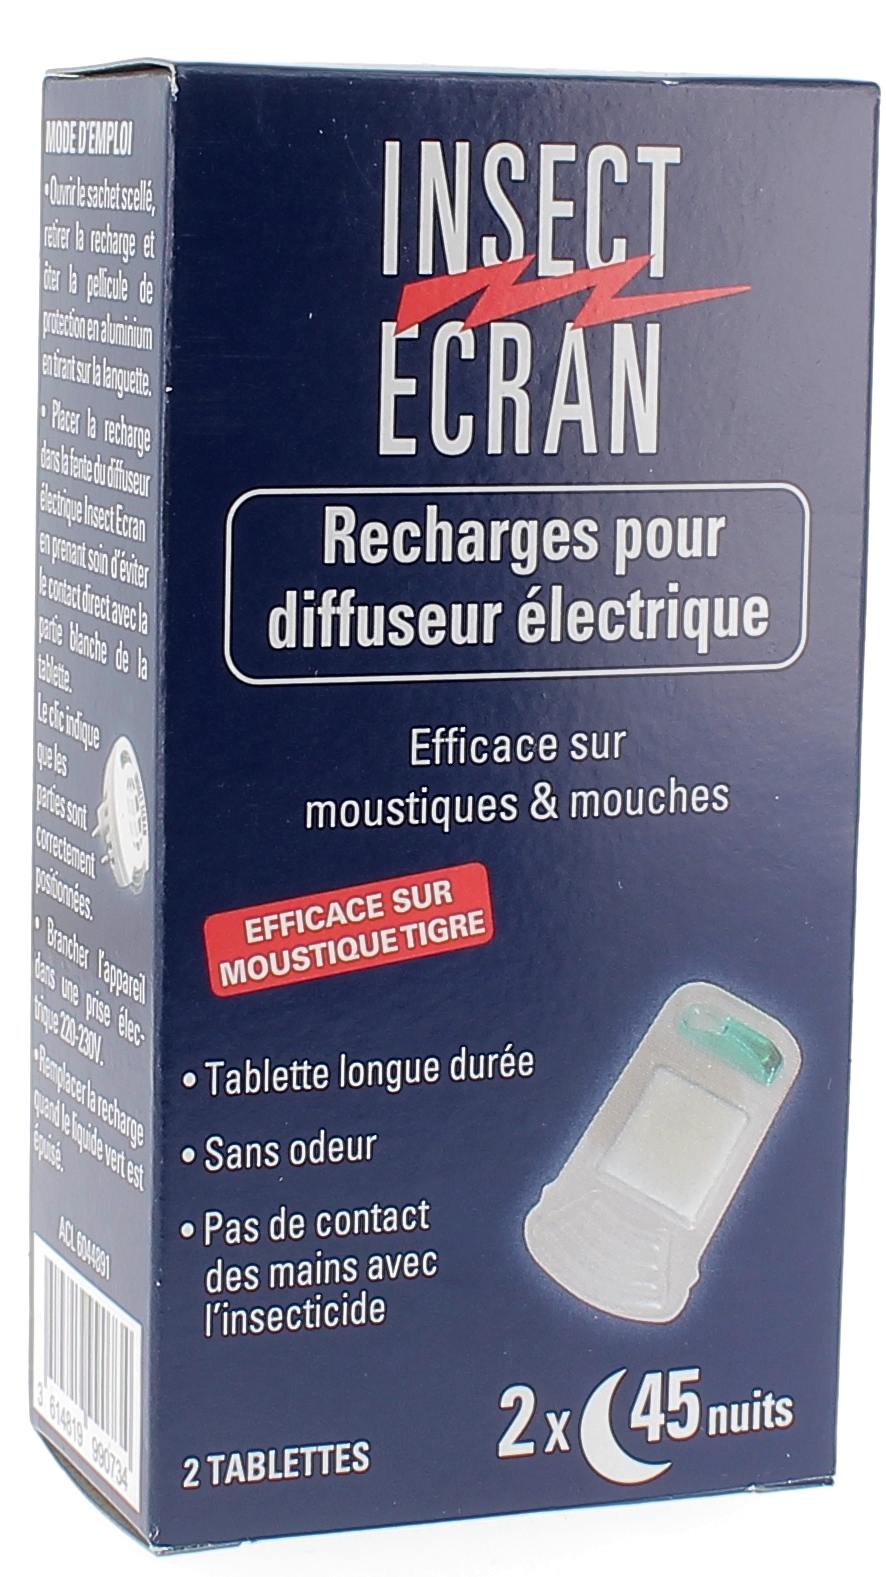 Recharges pour Diffuseur Electrique Insect Écran - 2 tablettes